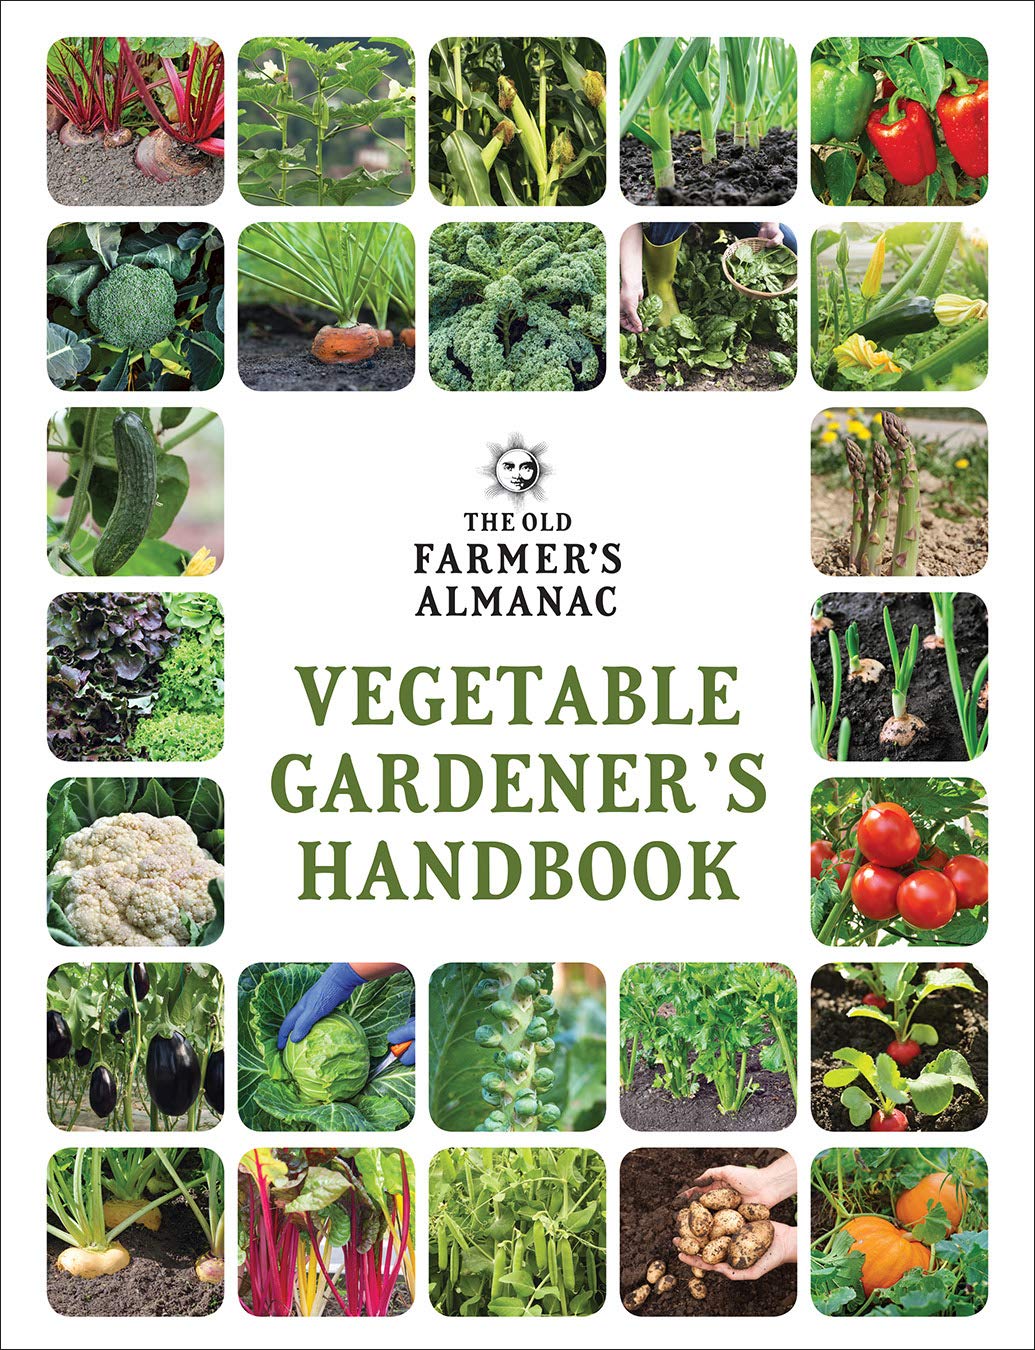 The Old Farmer's Almanac Vegetable Gardener’s Handbook: A Gift for the Gardening Lover